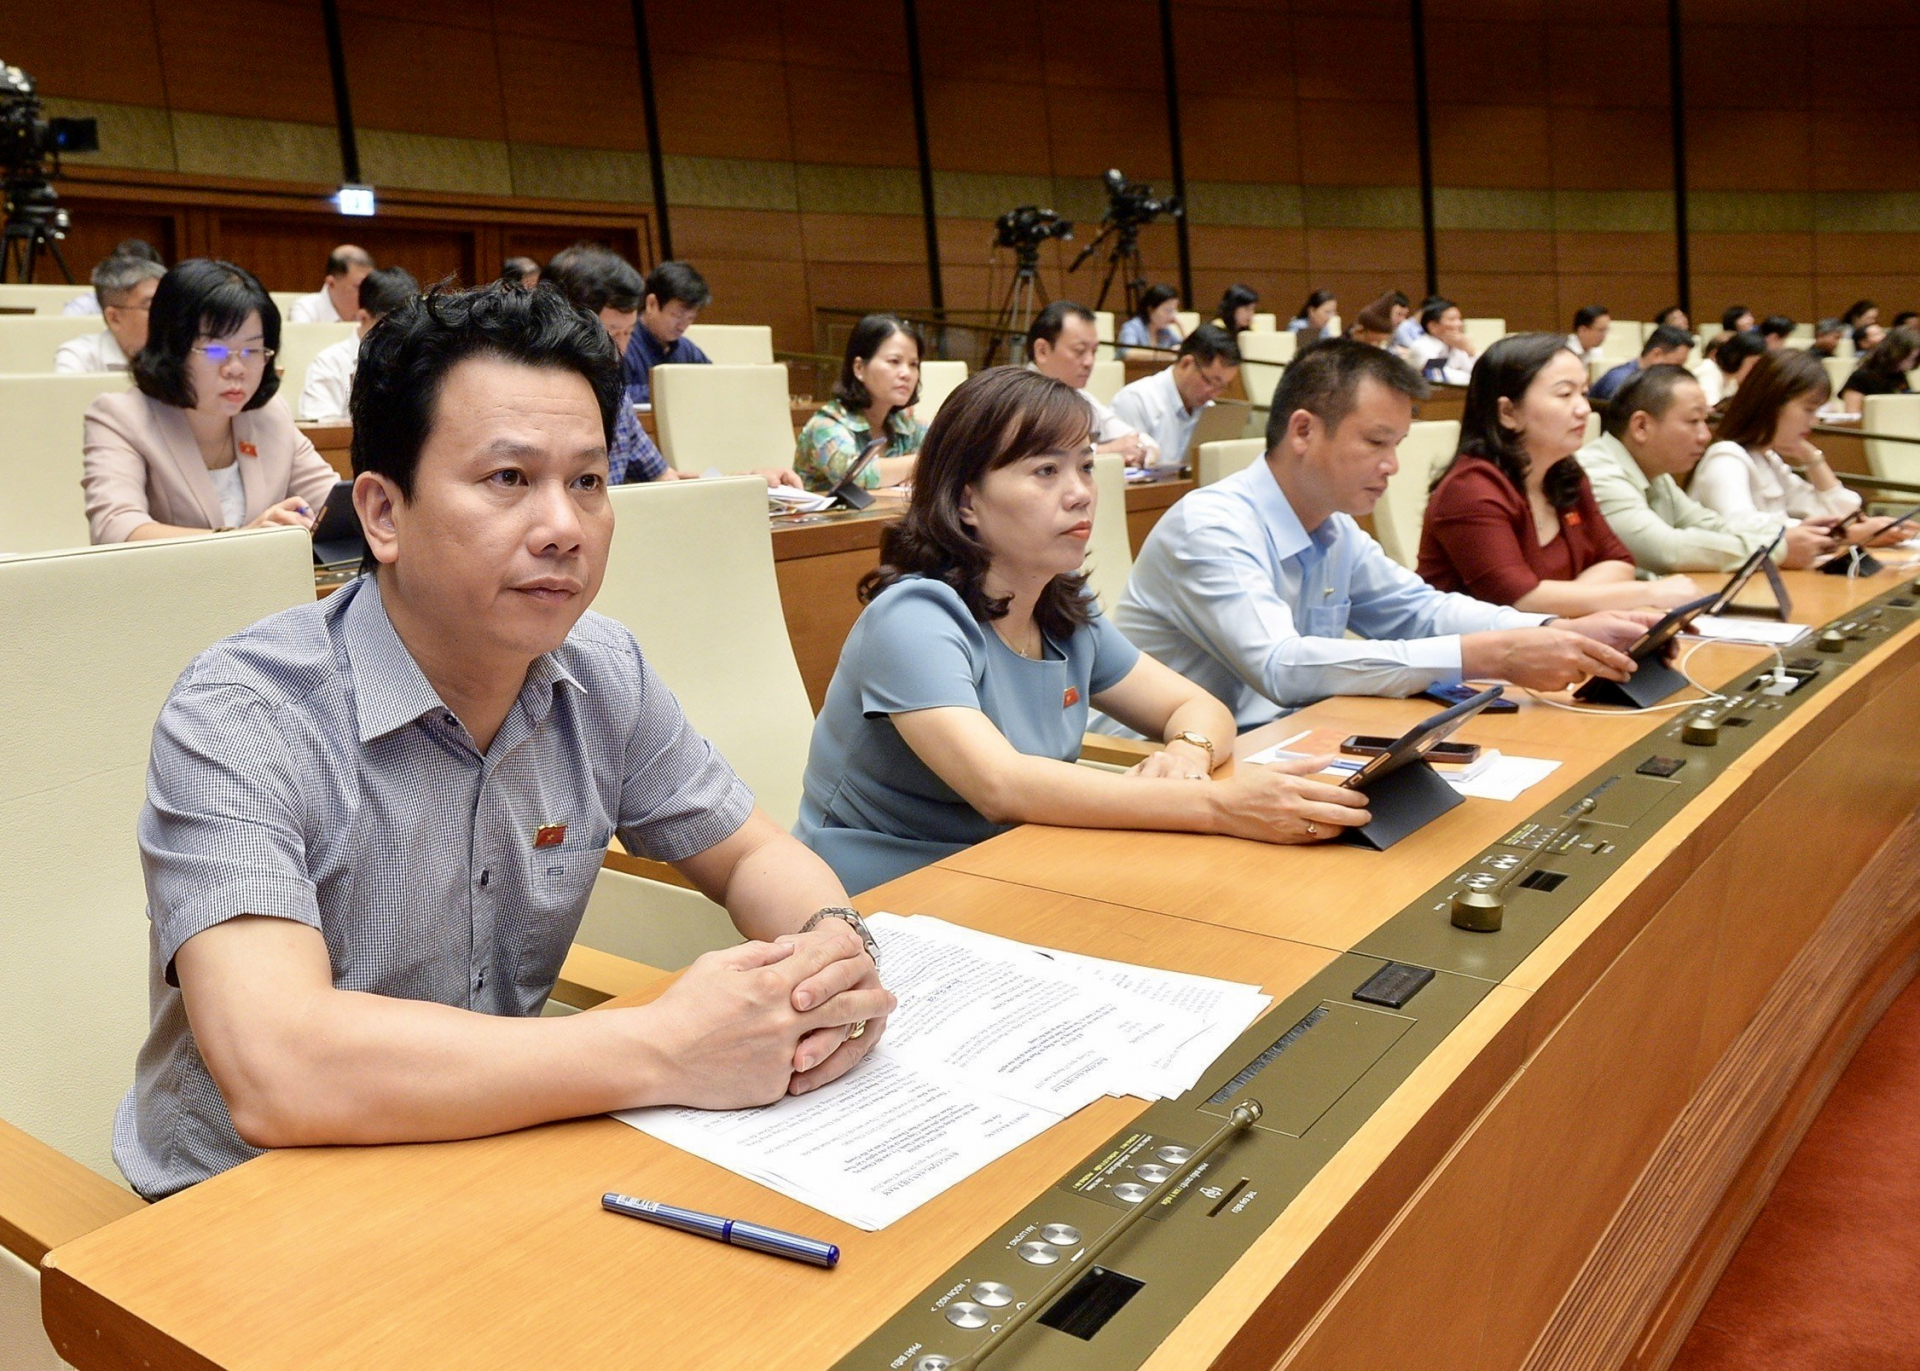 Đồng chí Đặng Quốc Khánh, Bộ trưởng Bộ Tài nguyên và Môi trường, Bí thư Tỉnh ủy cùng Đoàn ĐBQH tỉnh ta dự phiên thảo luận